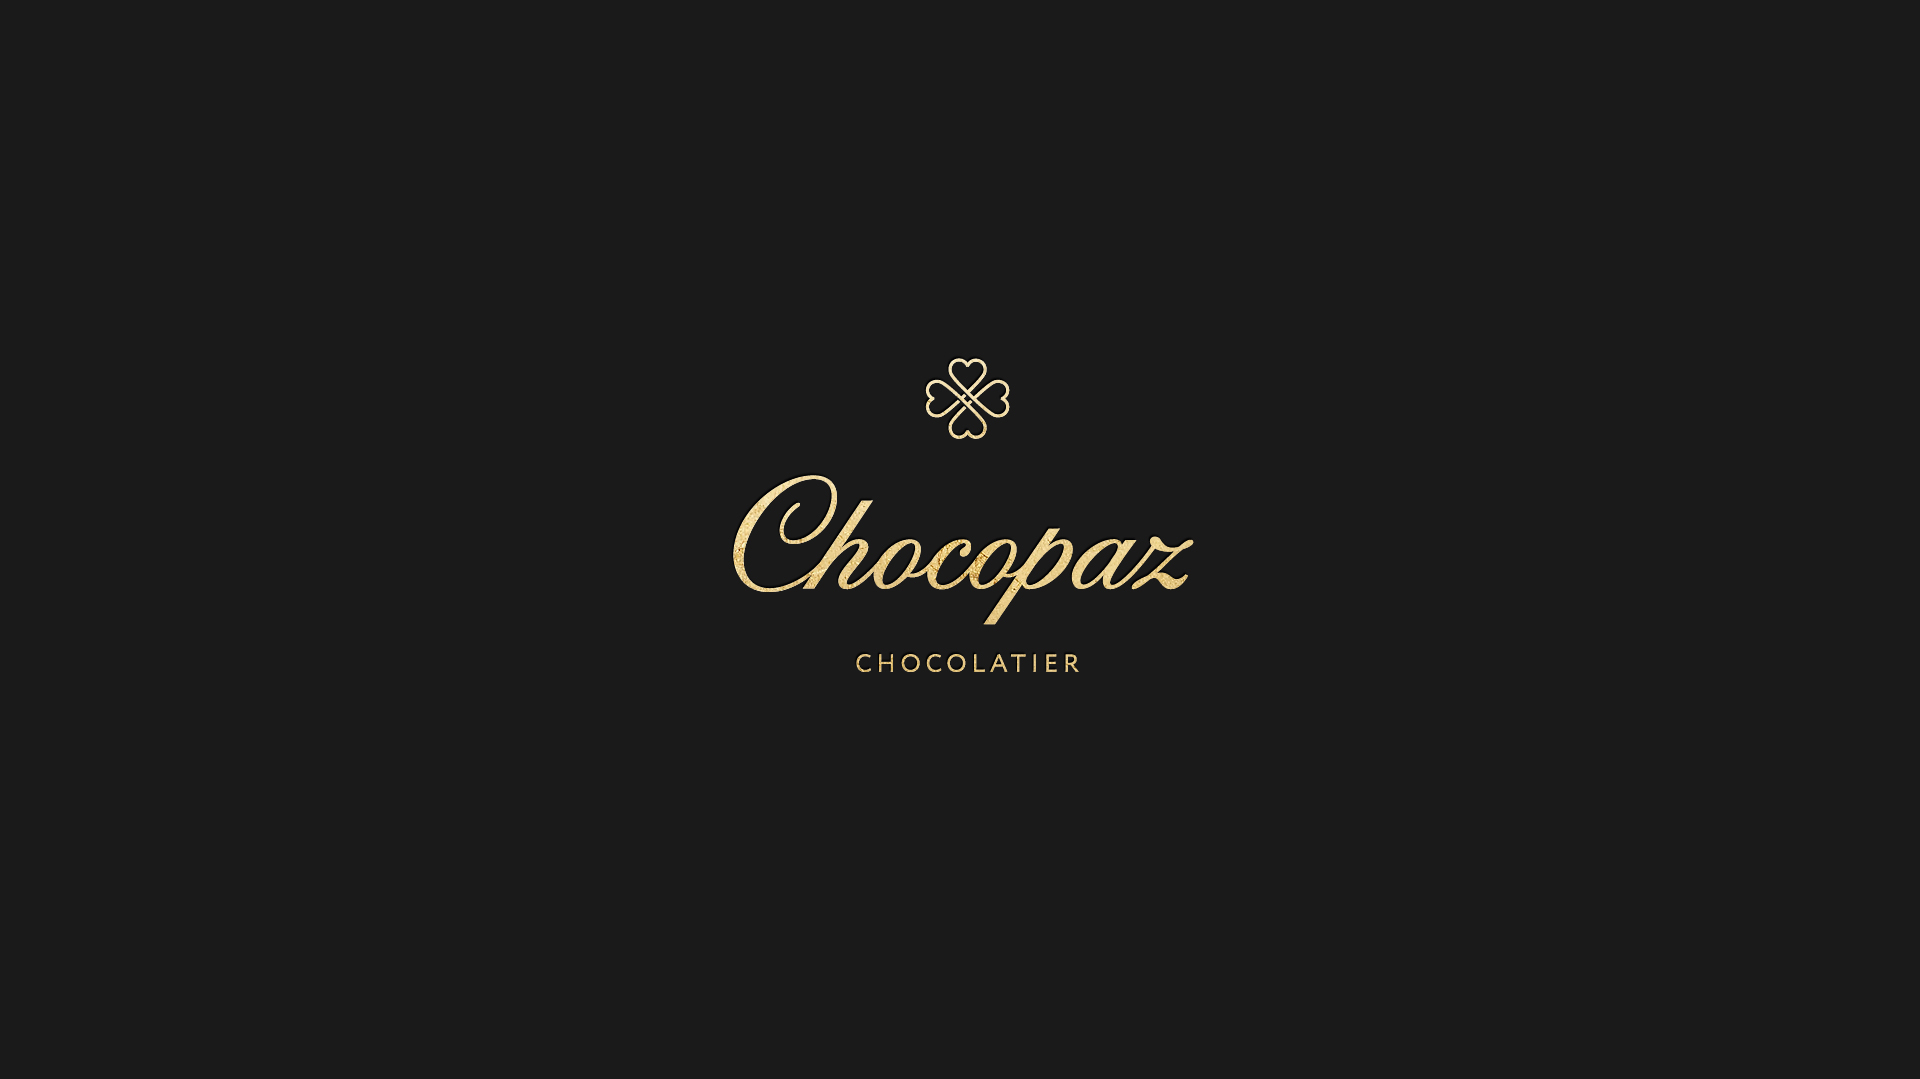 Создание бренда шоколада Chocopaz